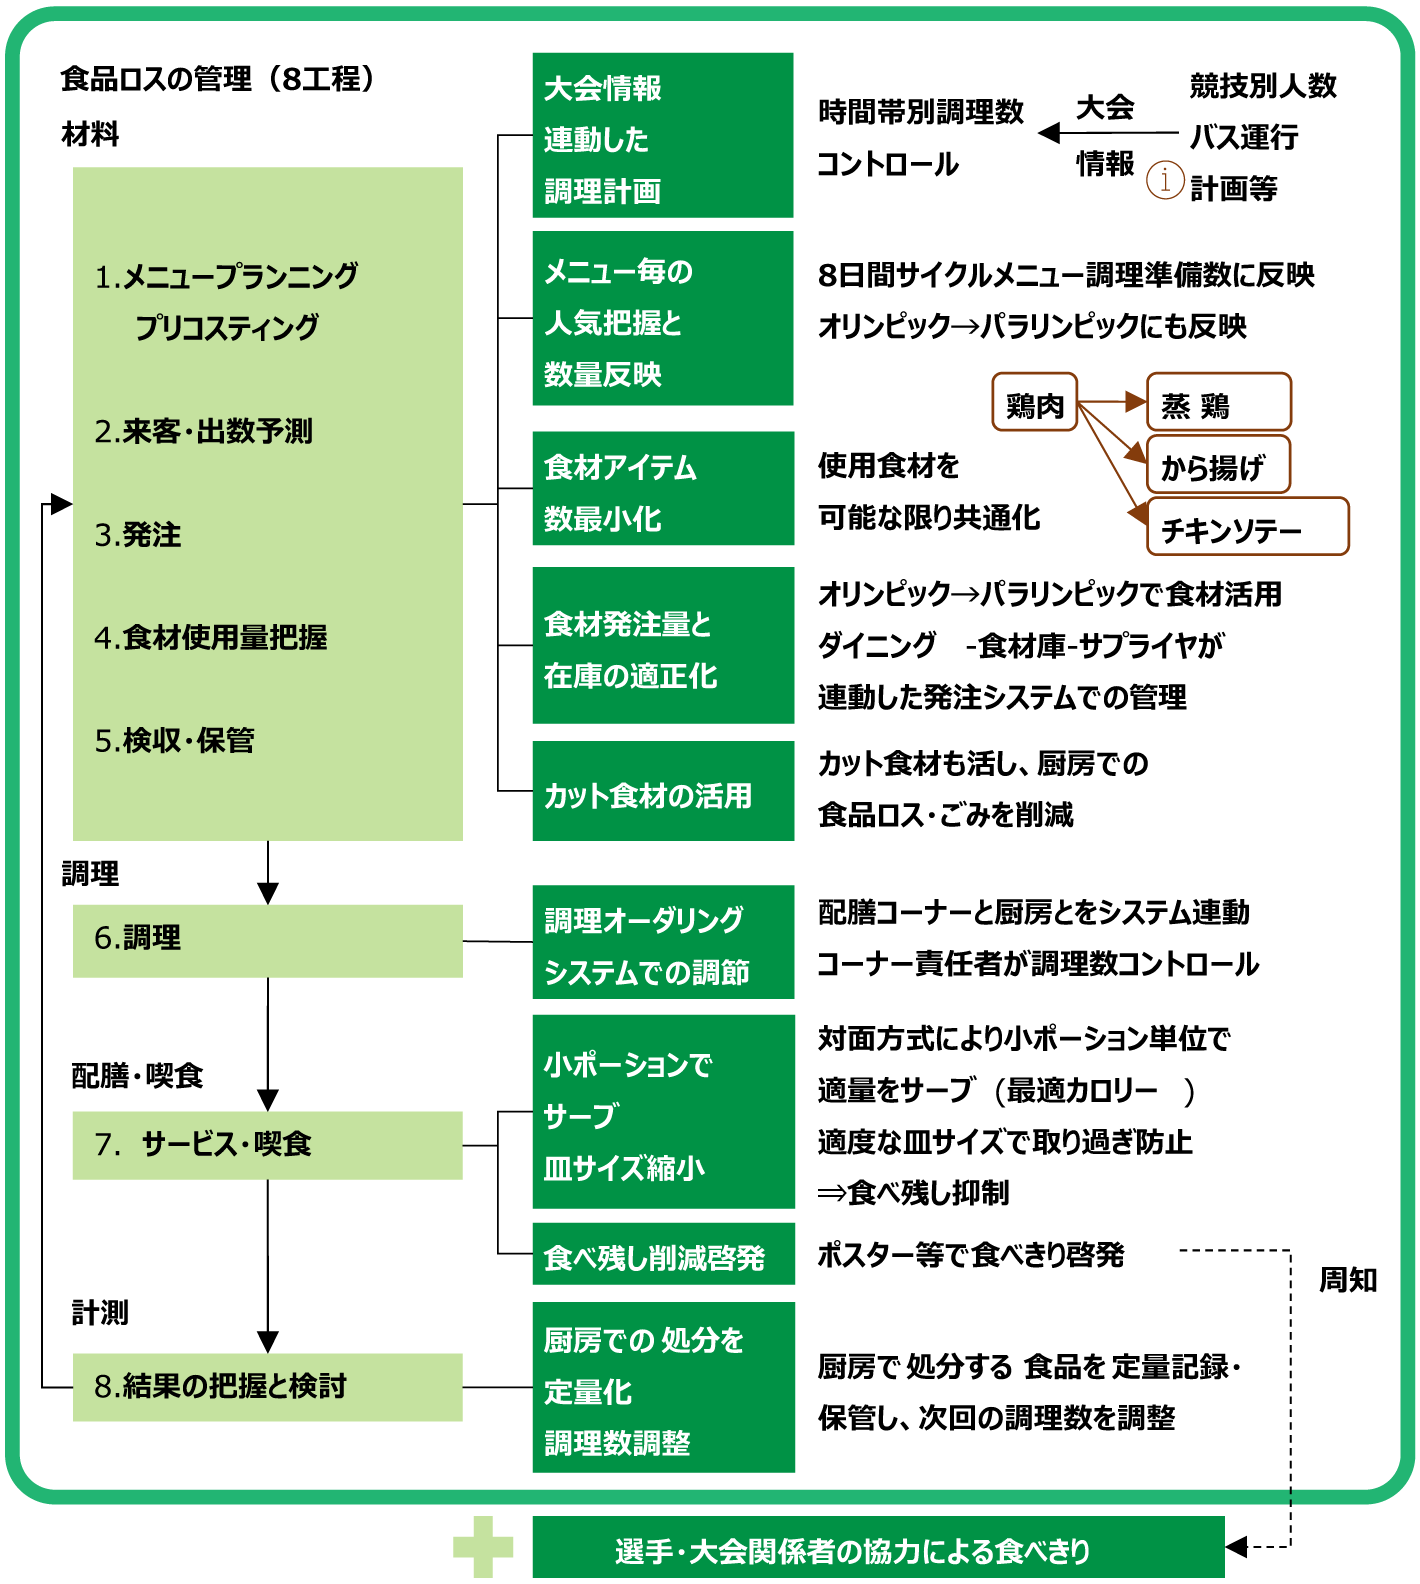 東京2020選手村での具体的な食品ロス対策